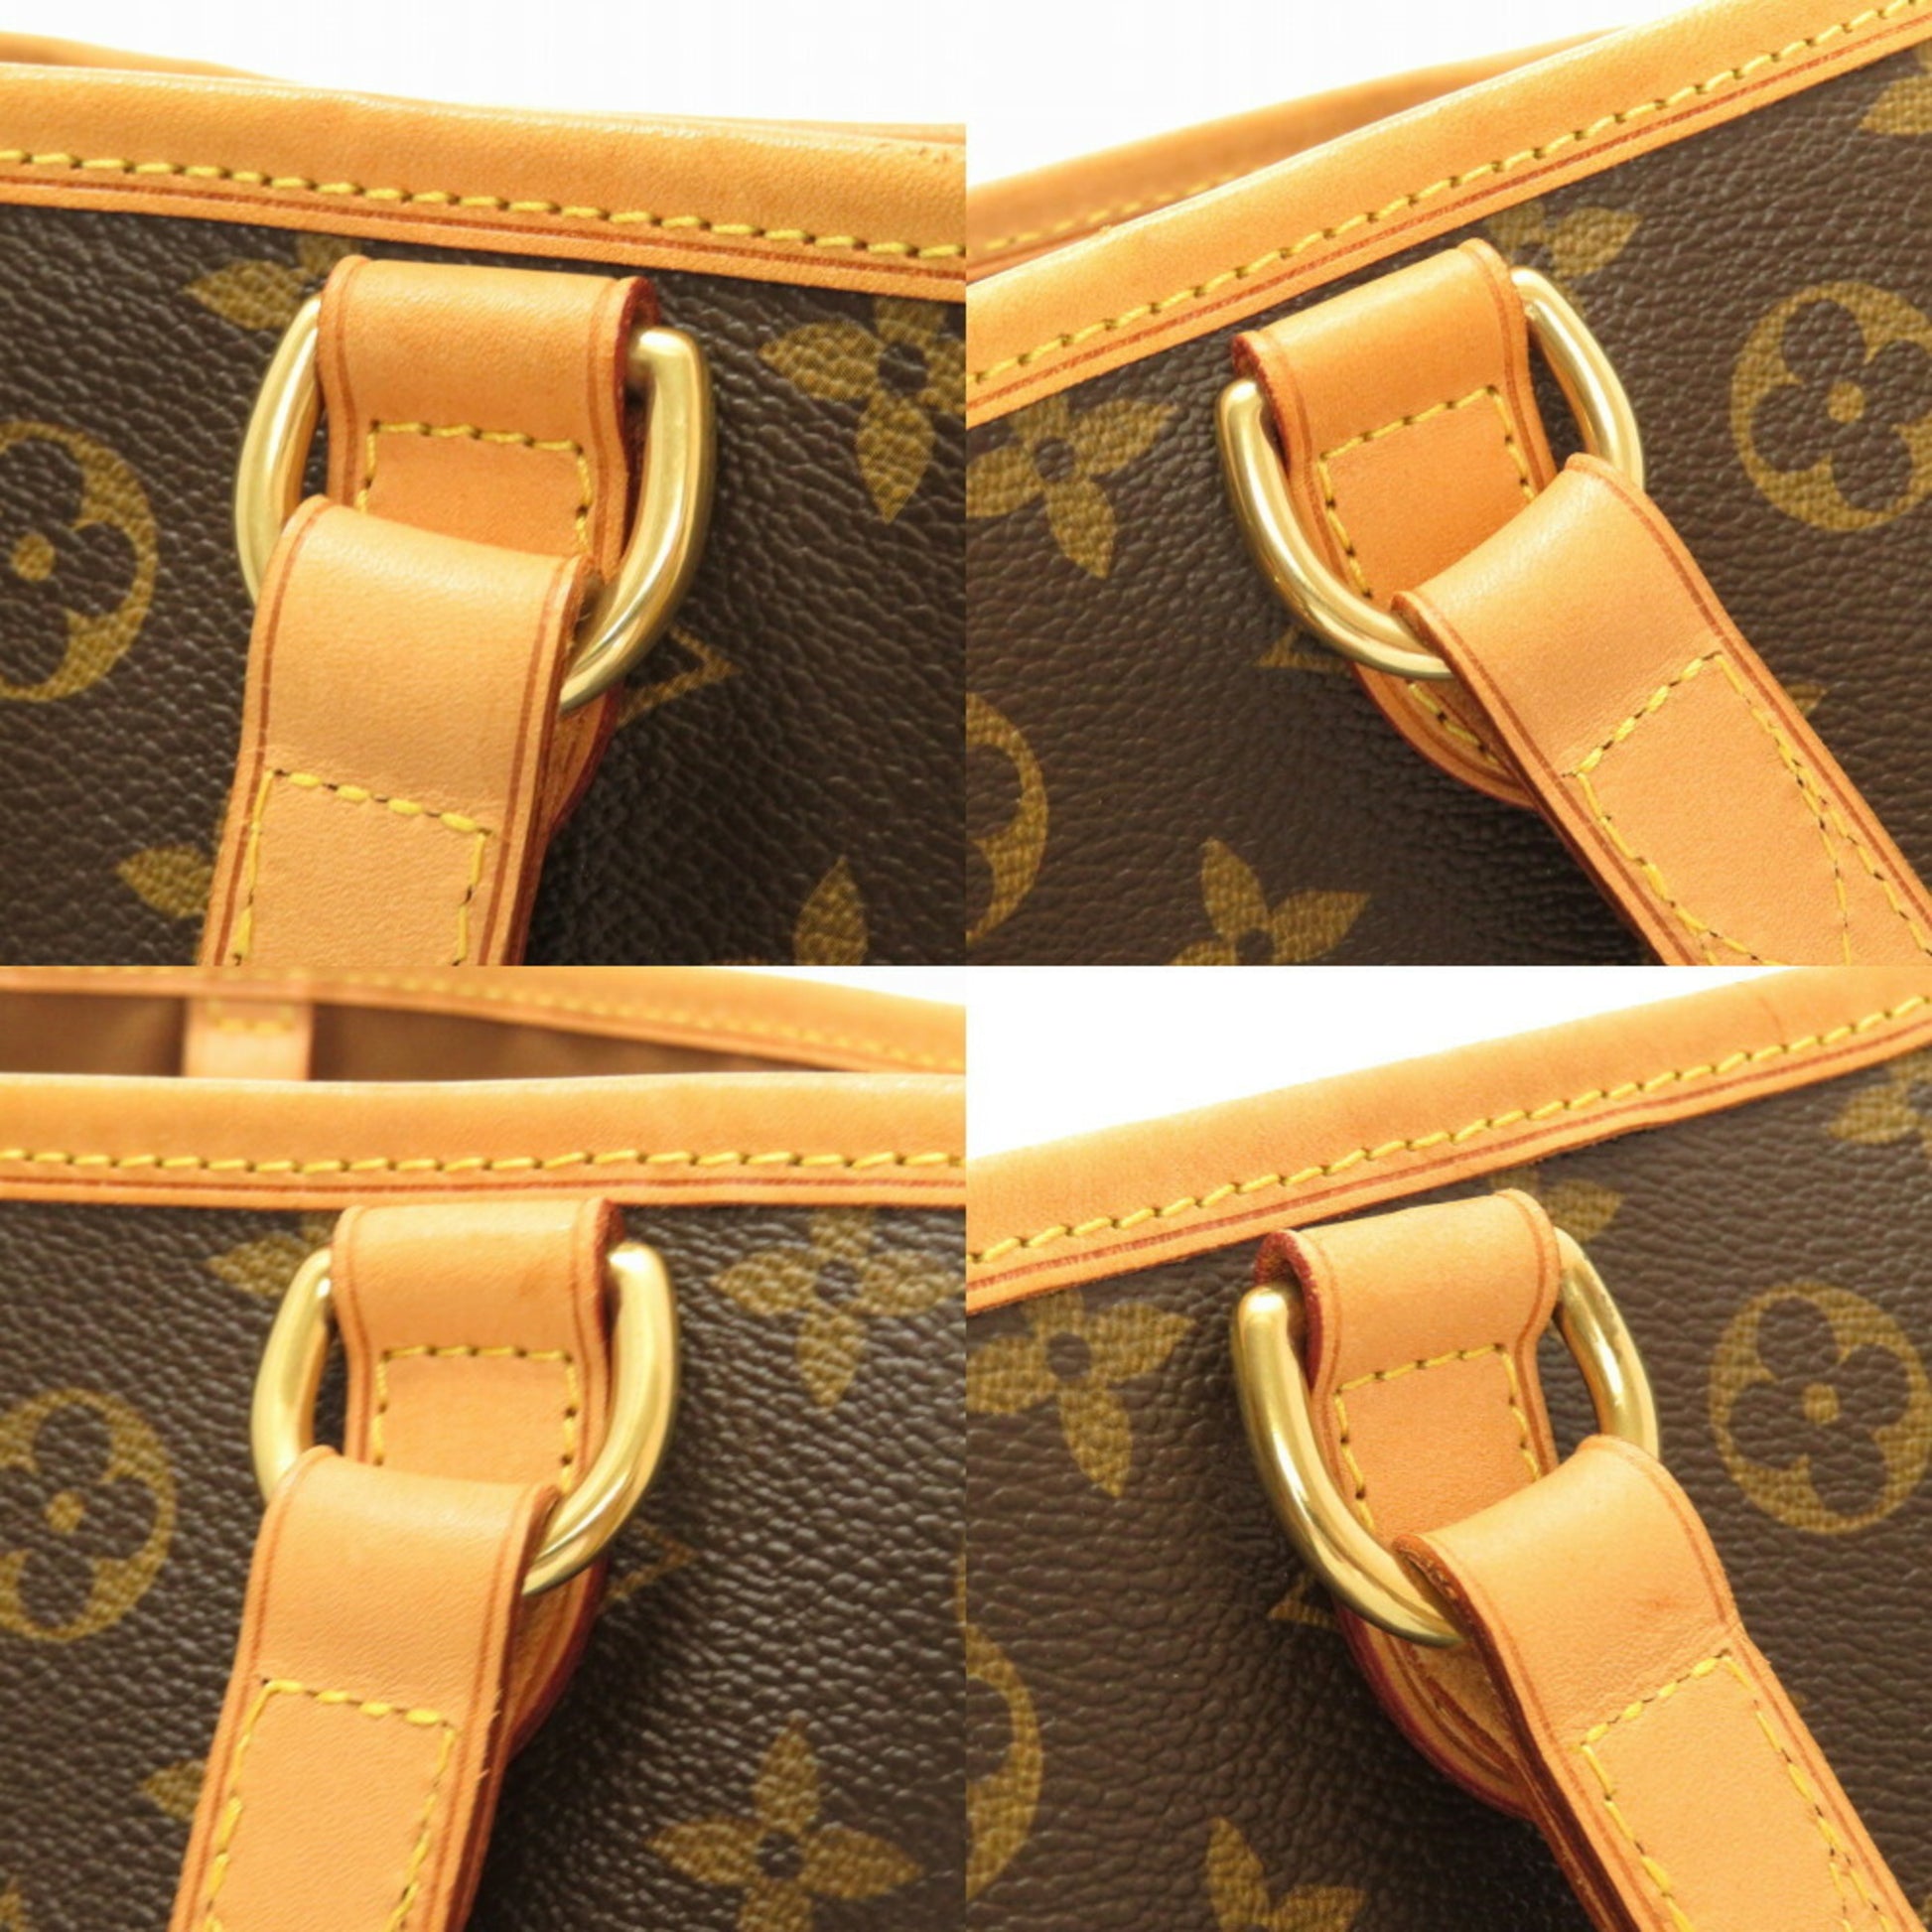 Louis Vuitton Monogram Batignolles Oriental Shoulder Bag Handbag M51154  Brown PVC Leather Women's LOUIS VUITTON